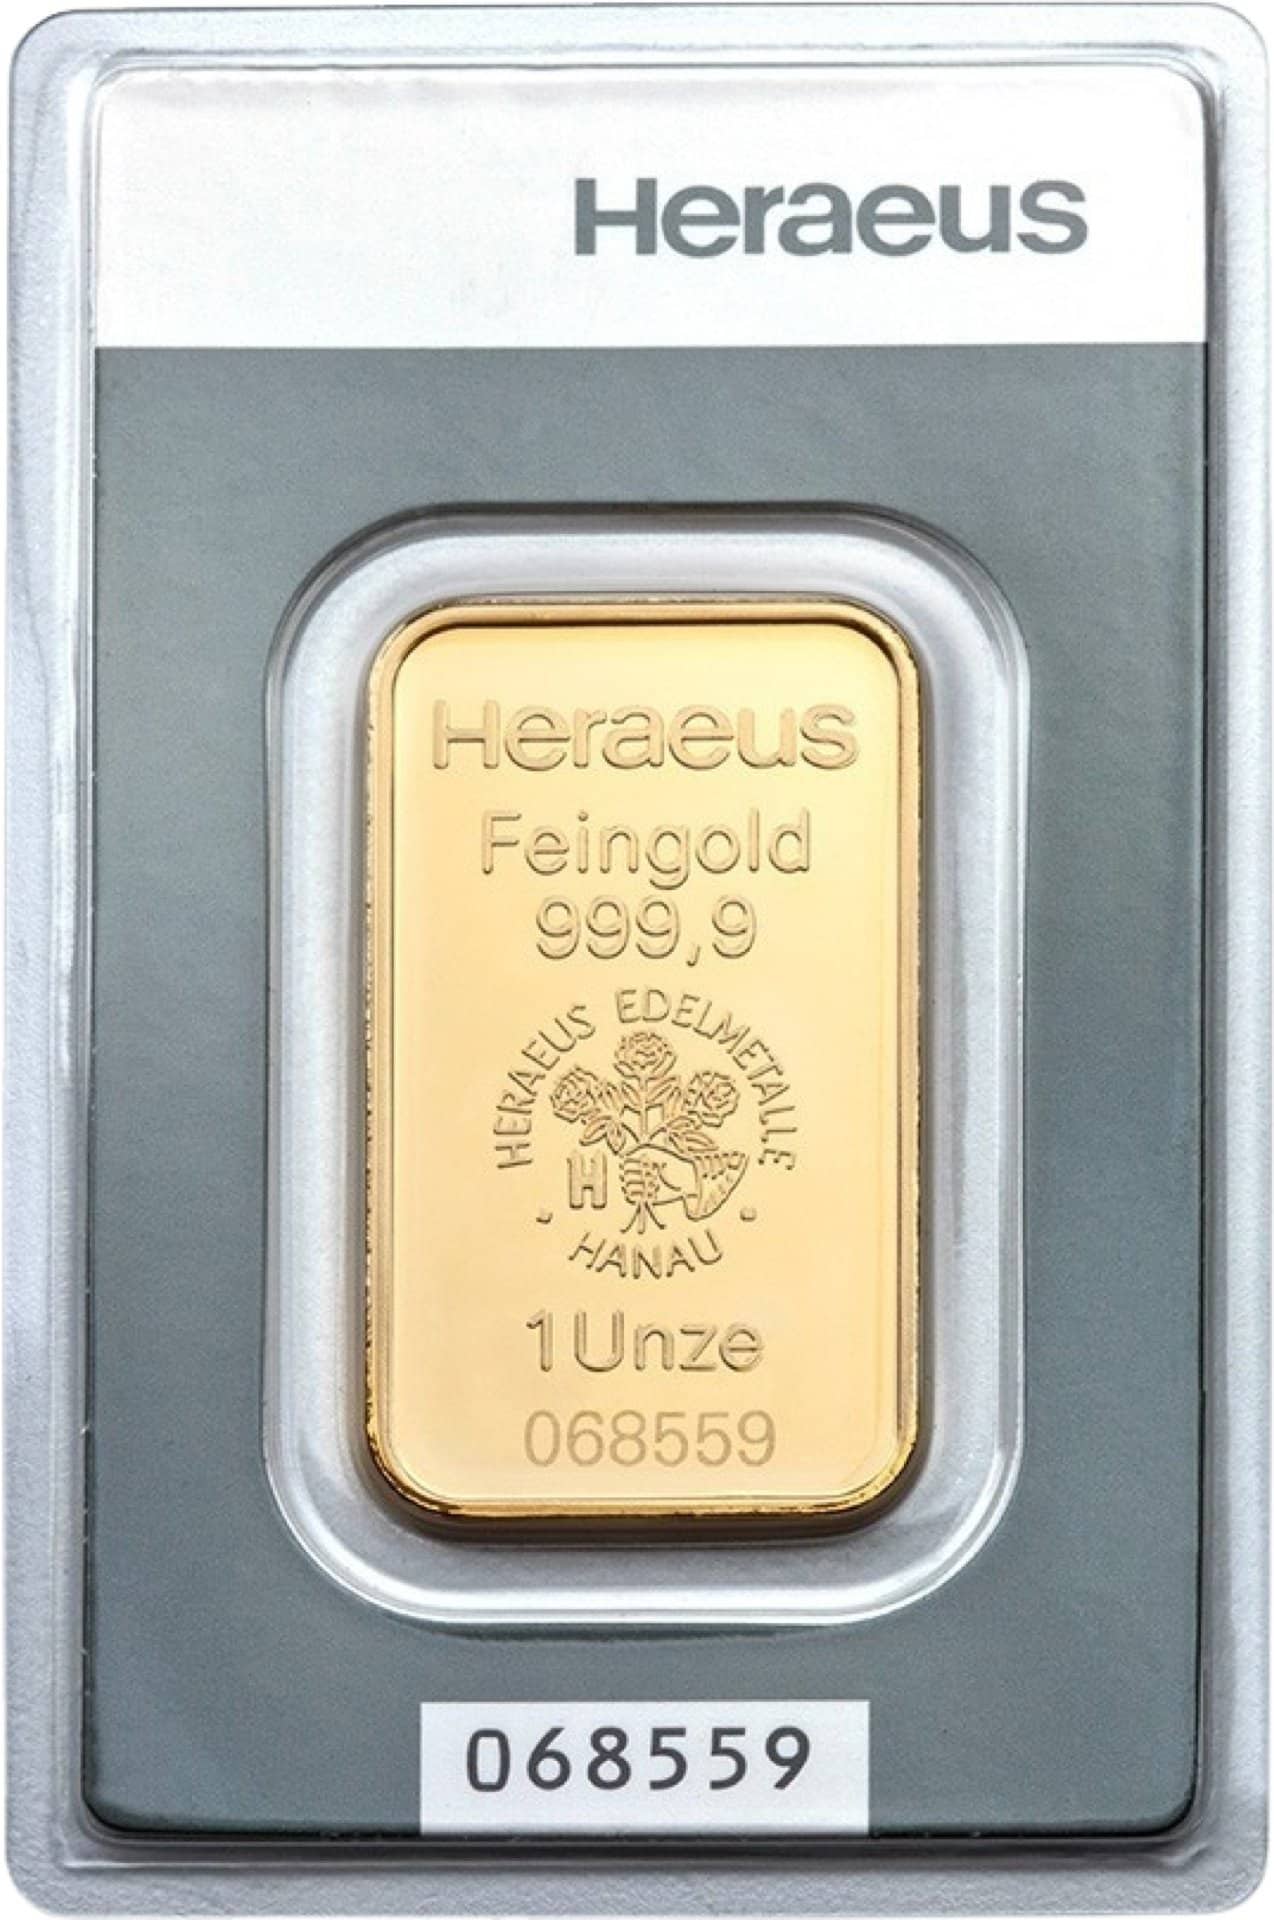 1 Unze Goldbarren Heraeus